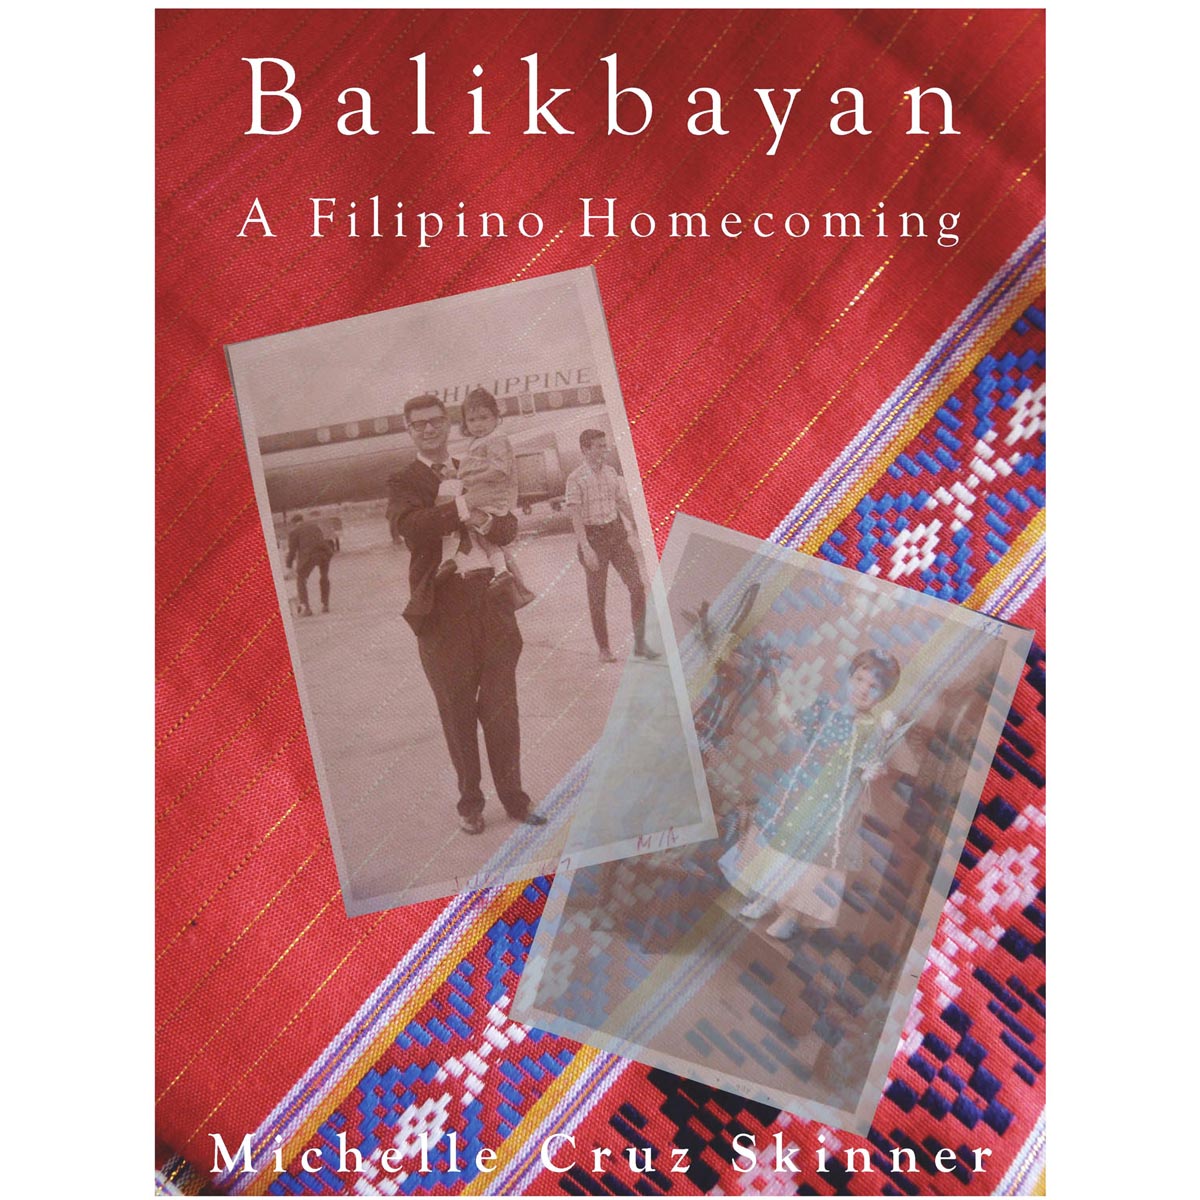 Balikbayan: A Filipino Homecoming